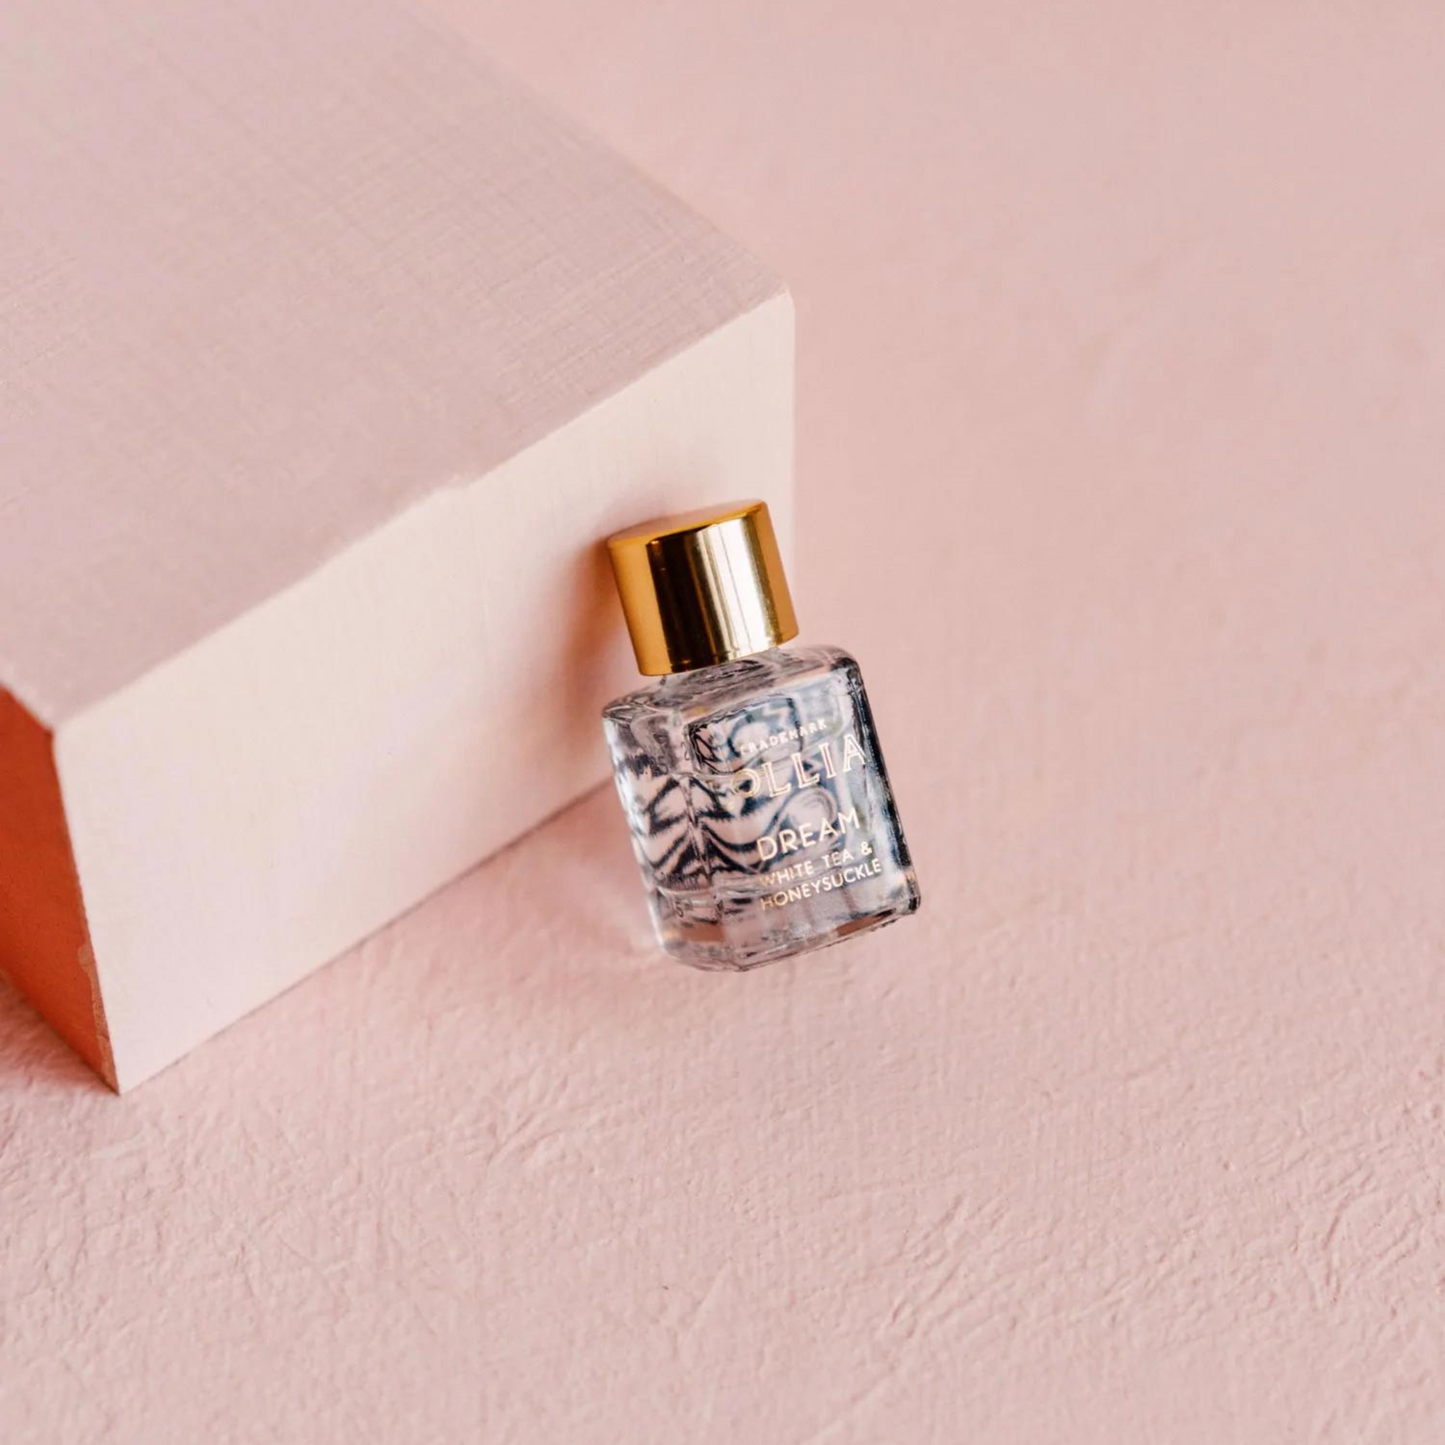 Lollia - Little Luxe Eau de Parfum - Dream